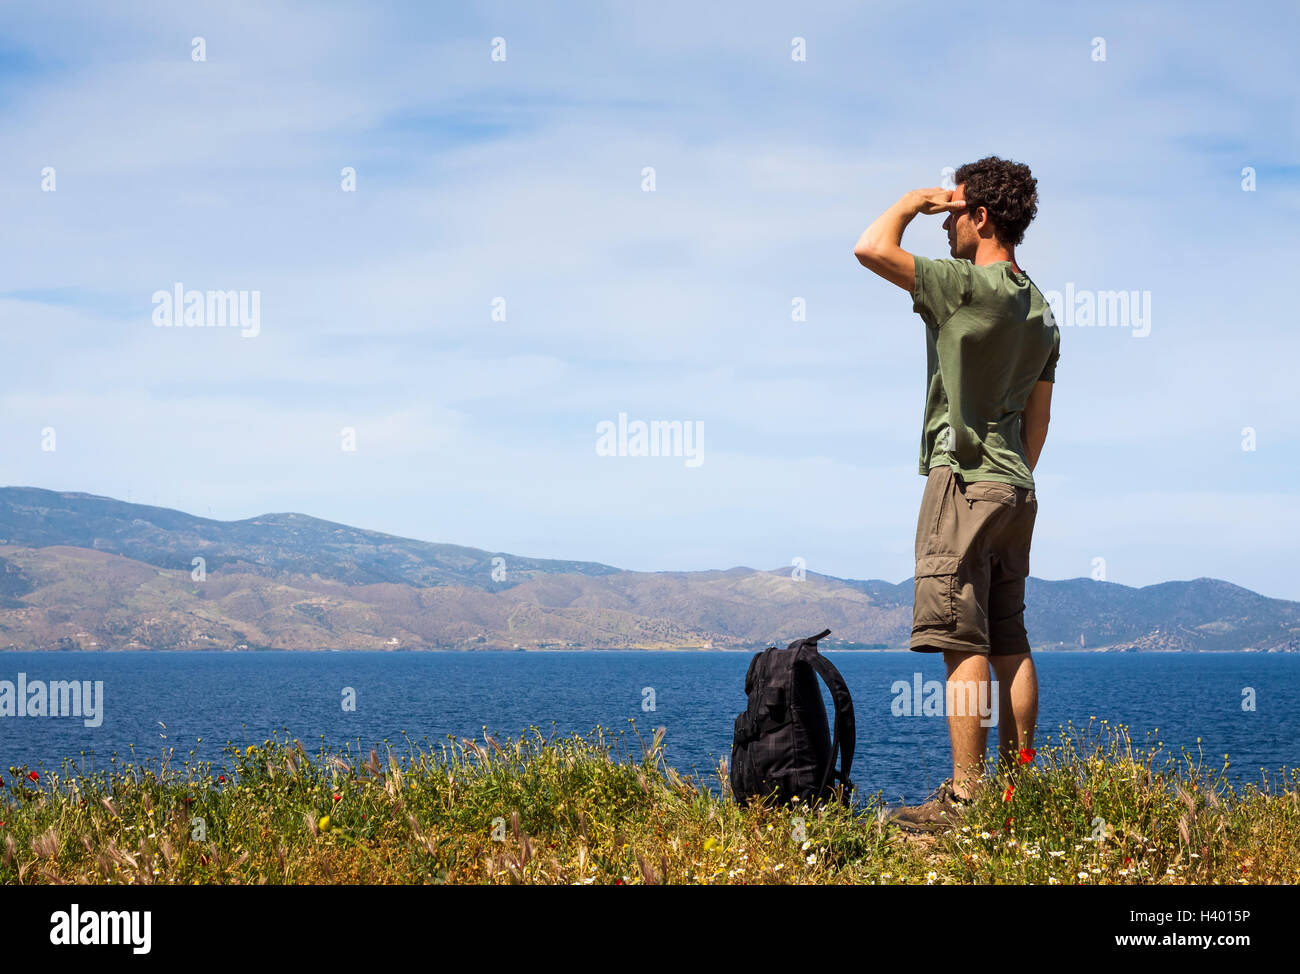 Escursionista con zaino godendo della splendida vista del mare dell'isola greca di Idra, copyspace Foto Stock